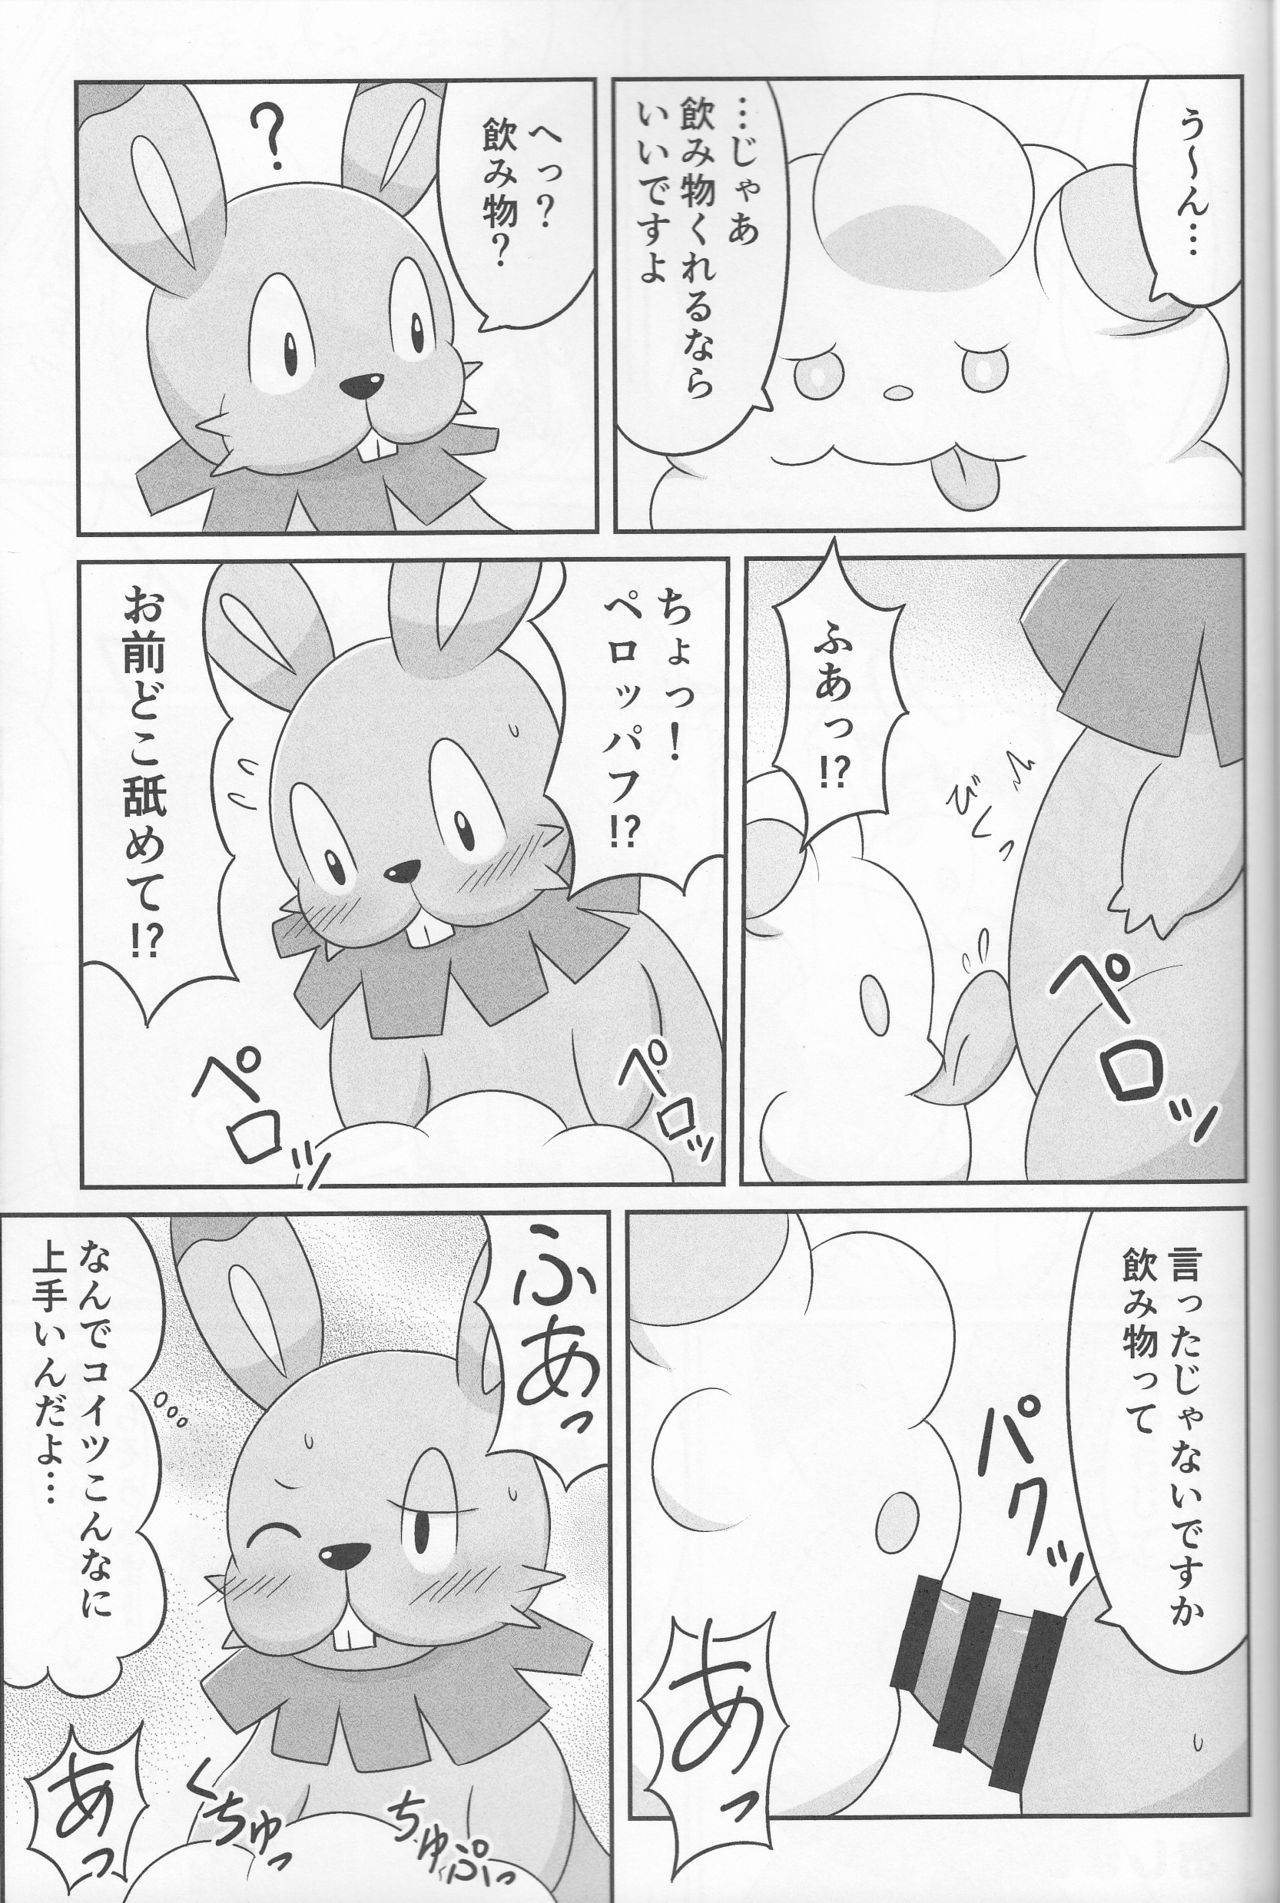 (Shinshun Kemoket 2) [Suzume-no-namida (Iro Suzume)] Dou Desu Ka? Kimochii Desu Ka? (Pokémon Super Mystery Dungeon) (新春けもケット2) [すずめのナミダ (ぃろすずめ)] どうですか◯◯ 気持ちいですか? (ポケモン超不思議のダンジョン)